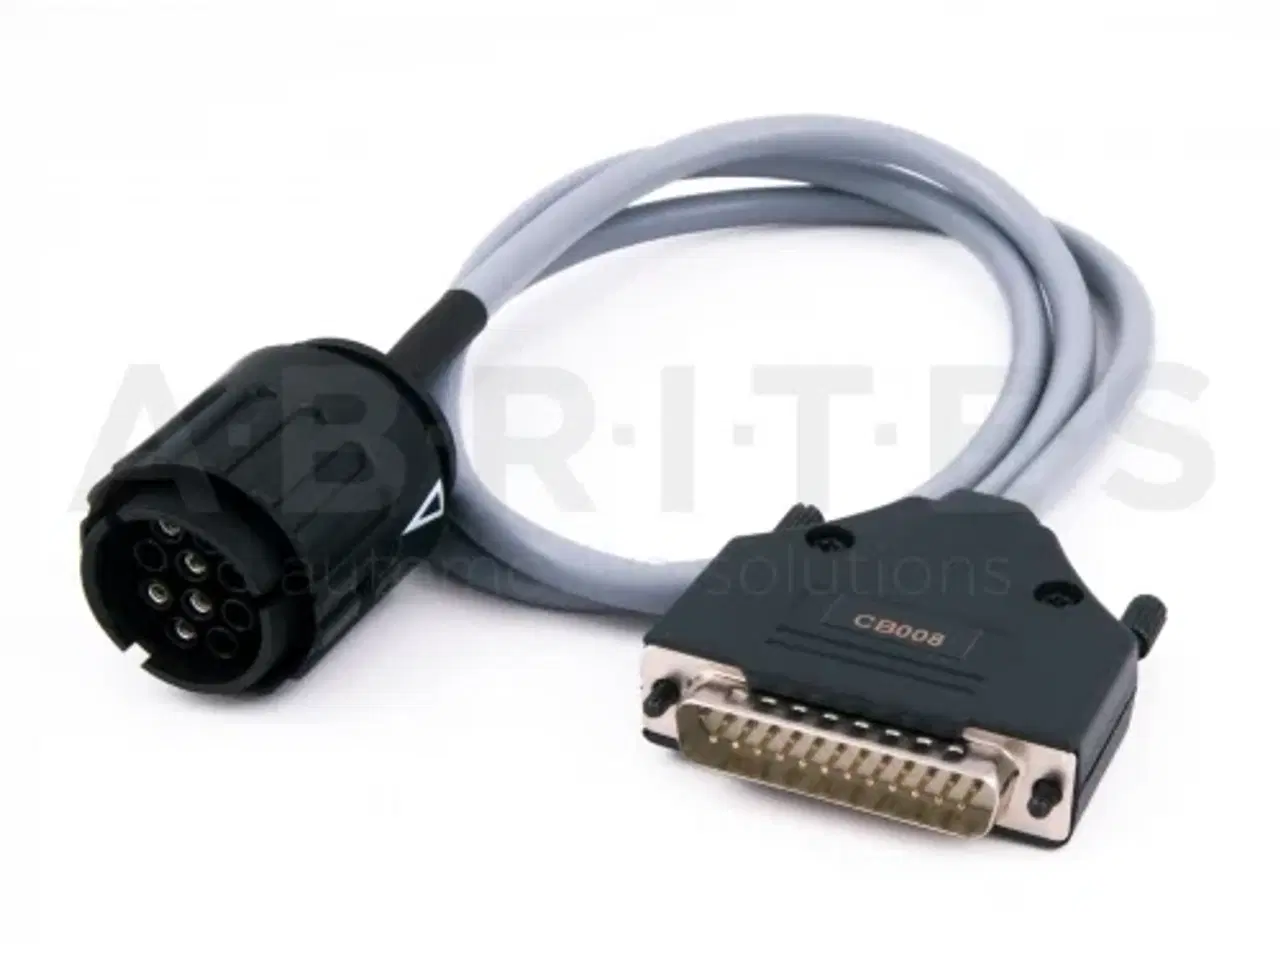 Billede 6 - UDSTYR TIL AVDI køb ekstra udstyr til din AVDI her (hardware)